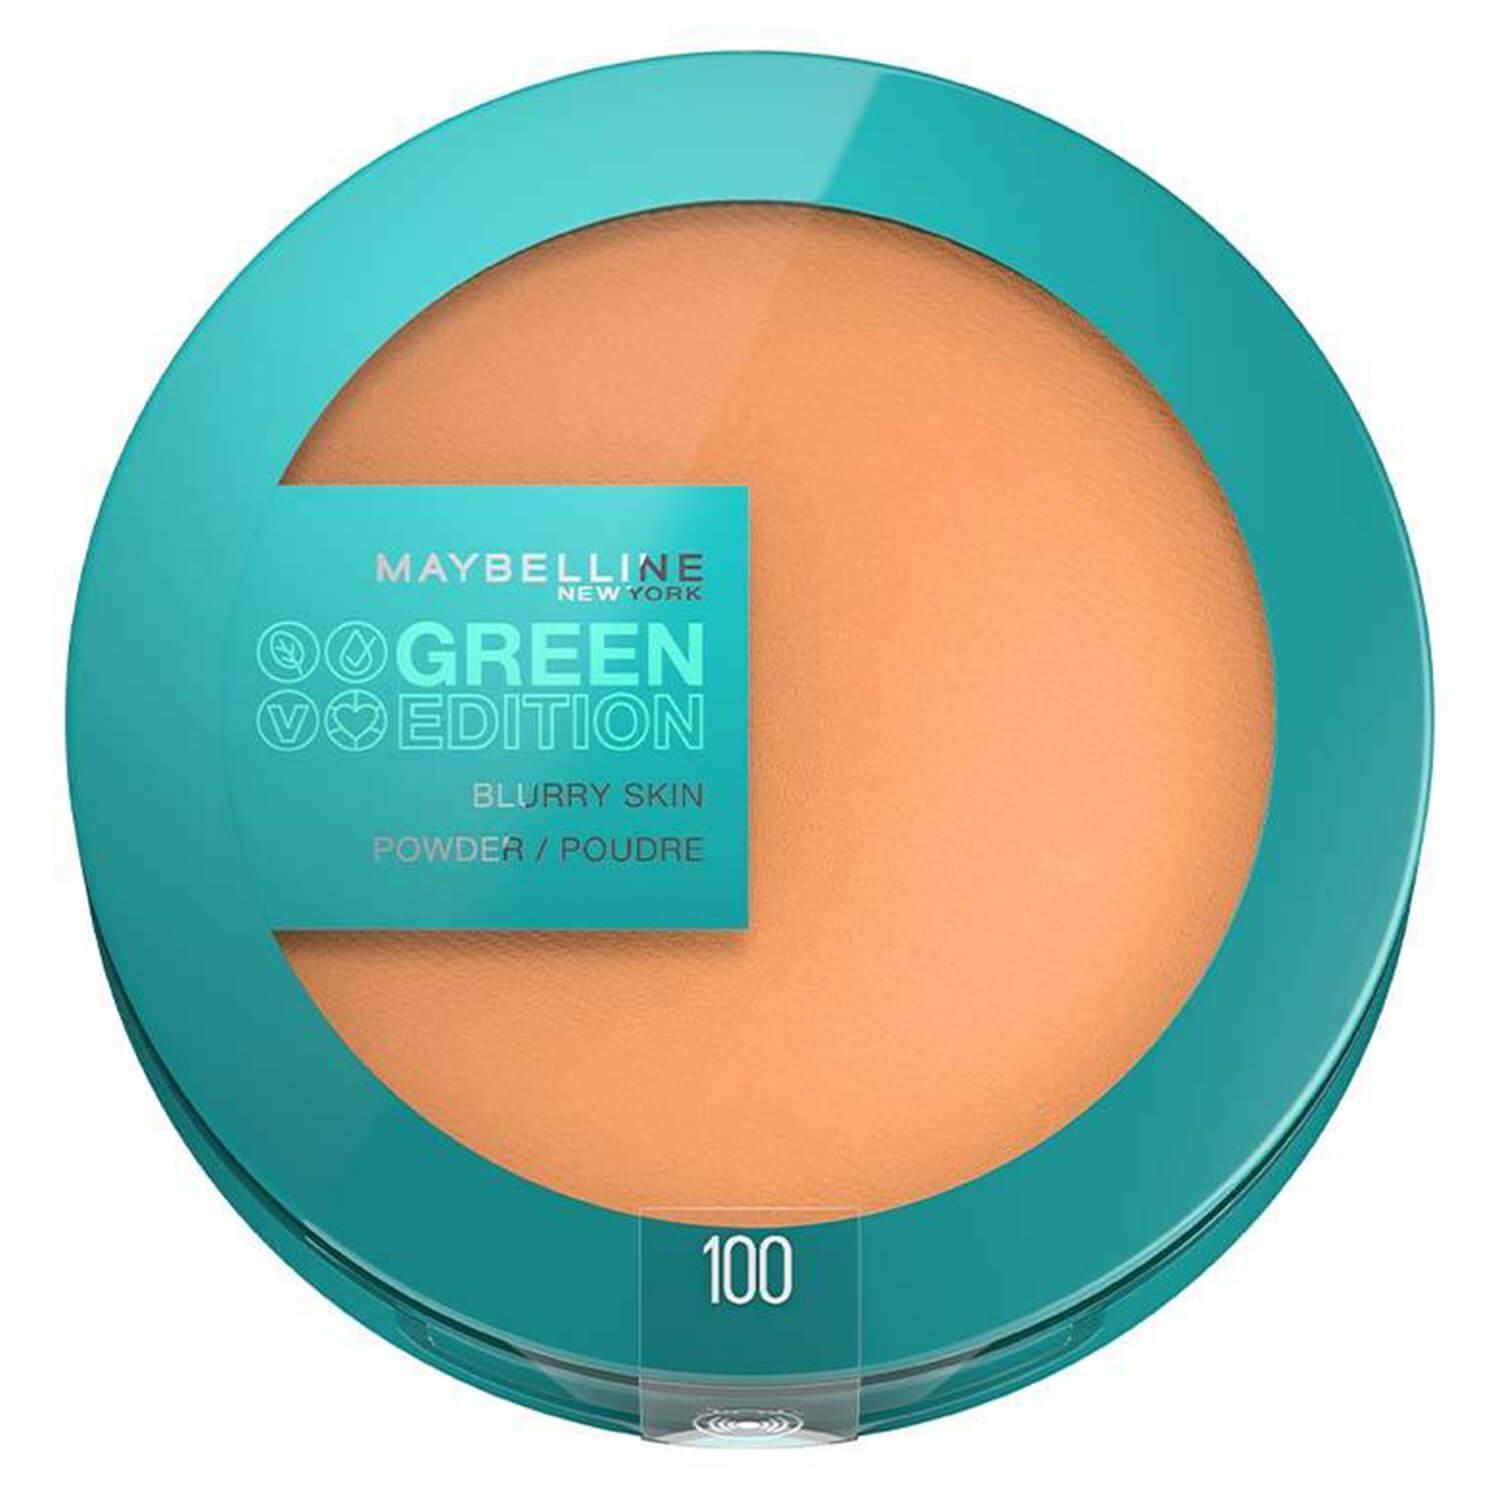 Maybelline NY Teint - Green Edition Blurry Skin Powder 100